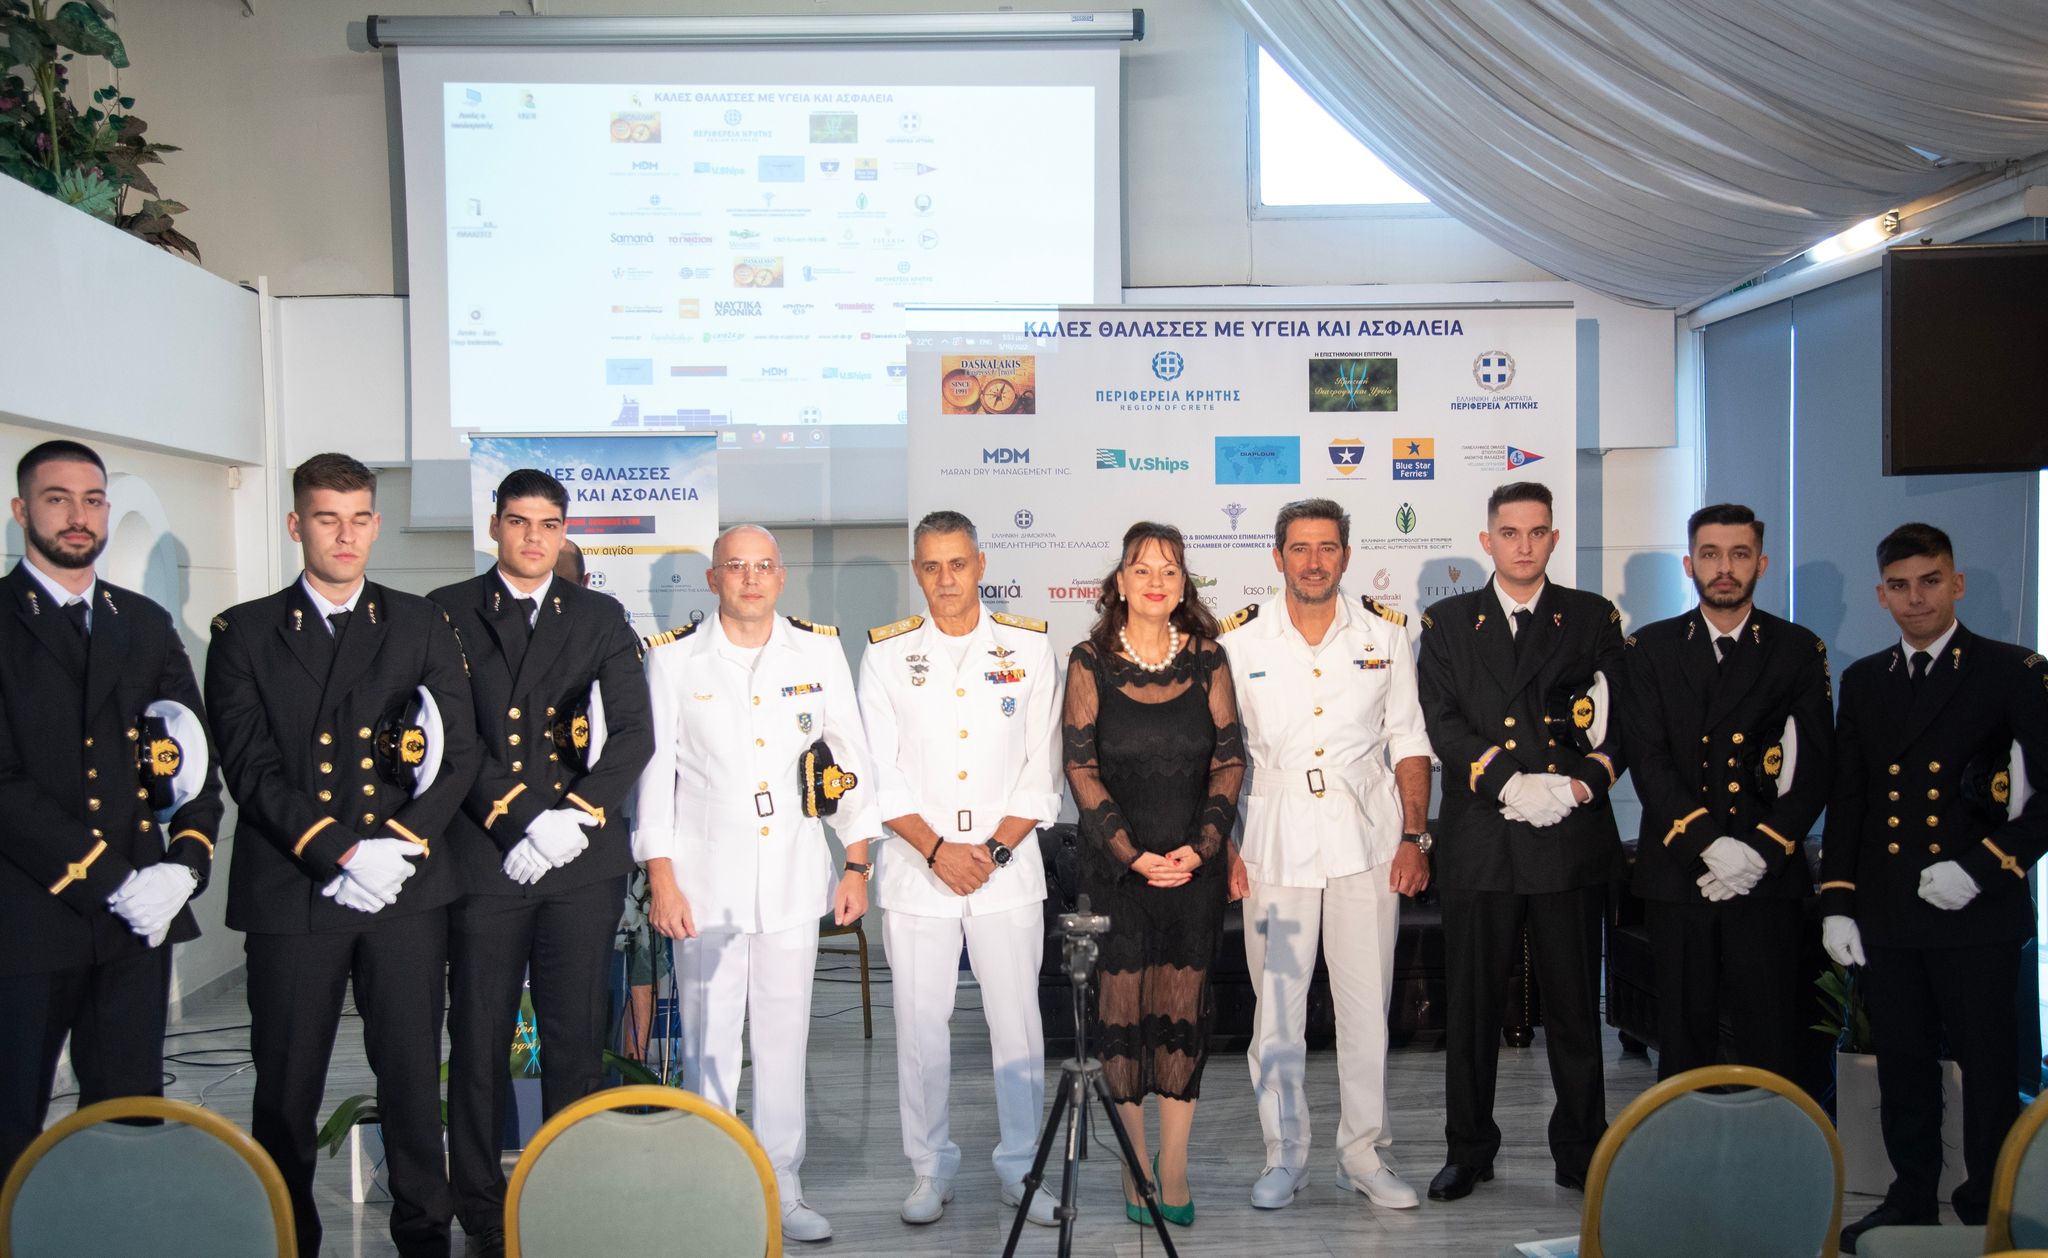 Με εξαιρετική επιτυχία πραγματοποιήθηκε και φέτος στο Μικρολίμανο η εκδήλωση με θέμα «Καλές θάλασσες με υγεία και ασφάλεια» - DASKALAKIS CONGRESS-TRV